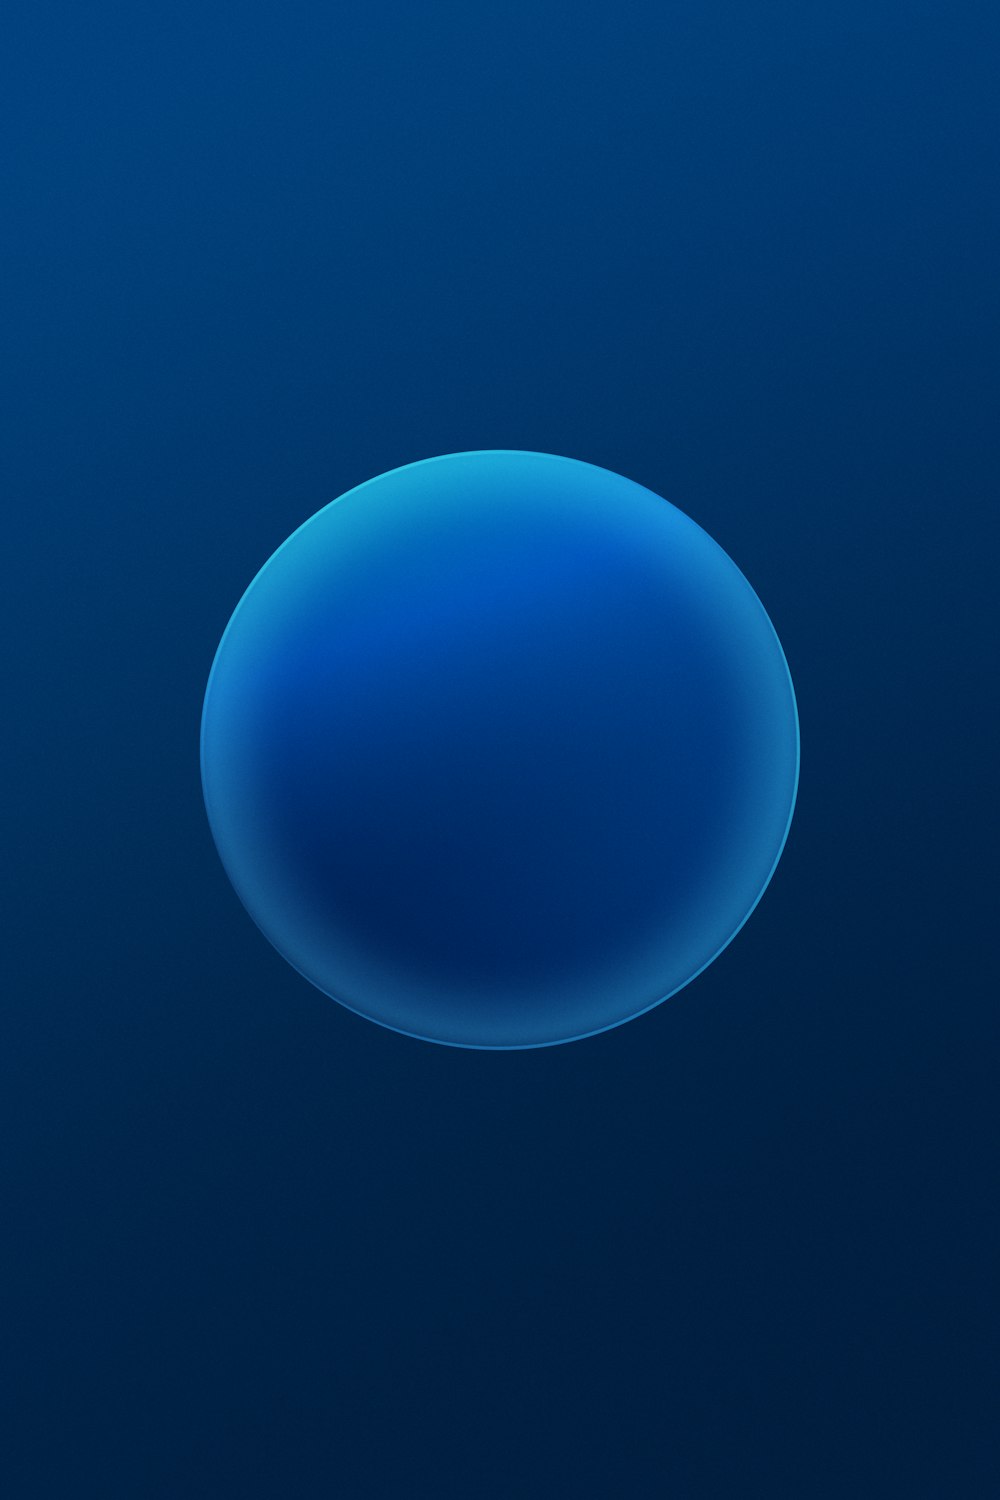 un fond bleu foncé avec une forme circulaire